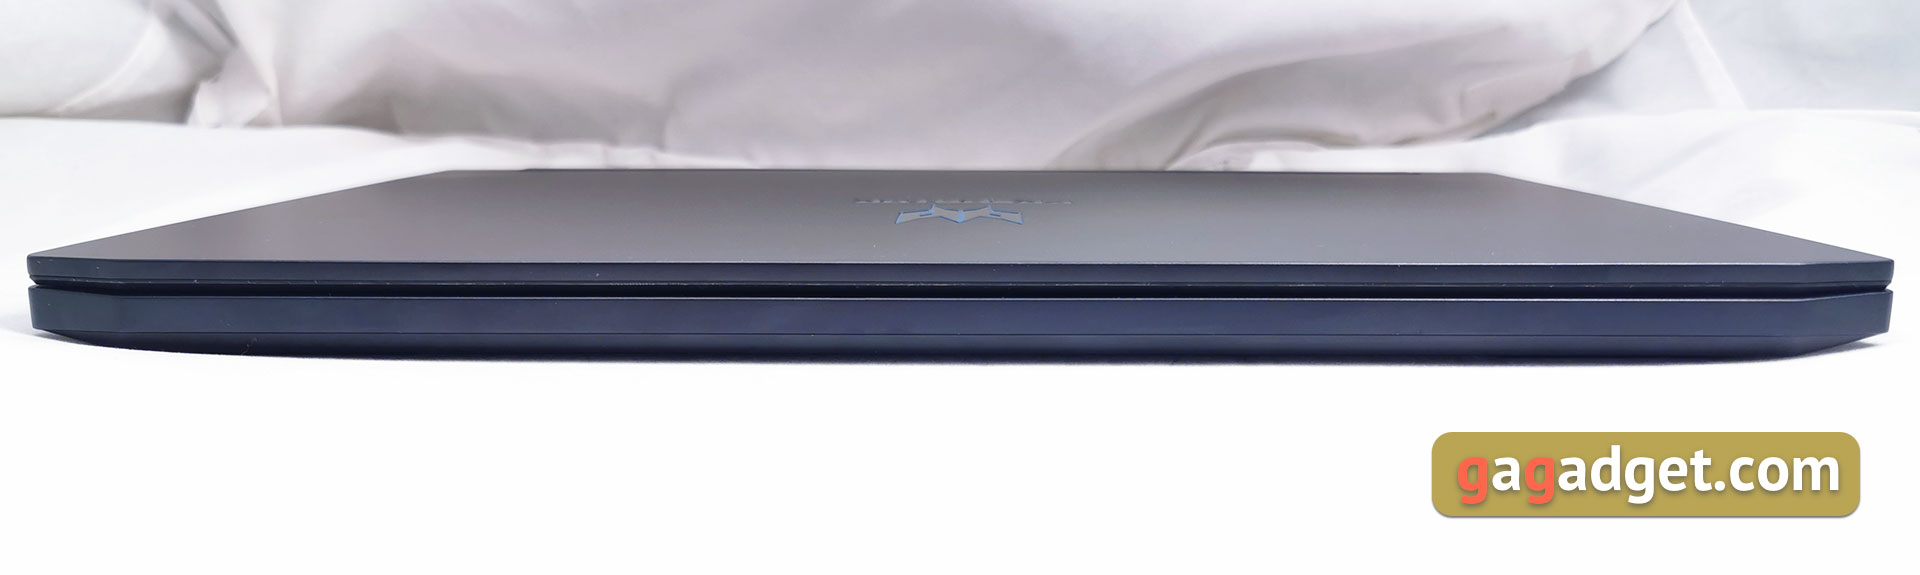 Recenzja Acer Predator Triton 500: laptop do gier z RTX 2080 Max-Q w zwartej, lekkiej obudowie-8